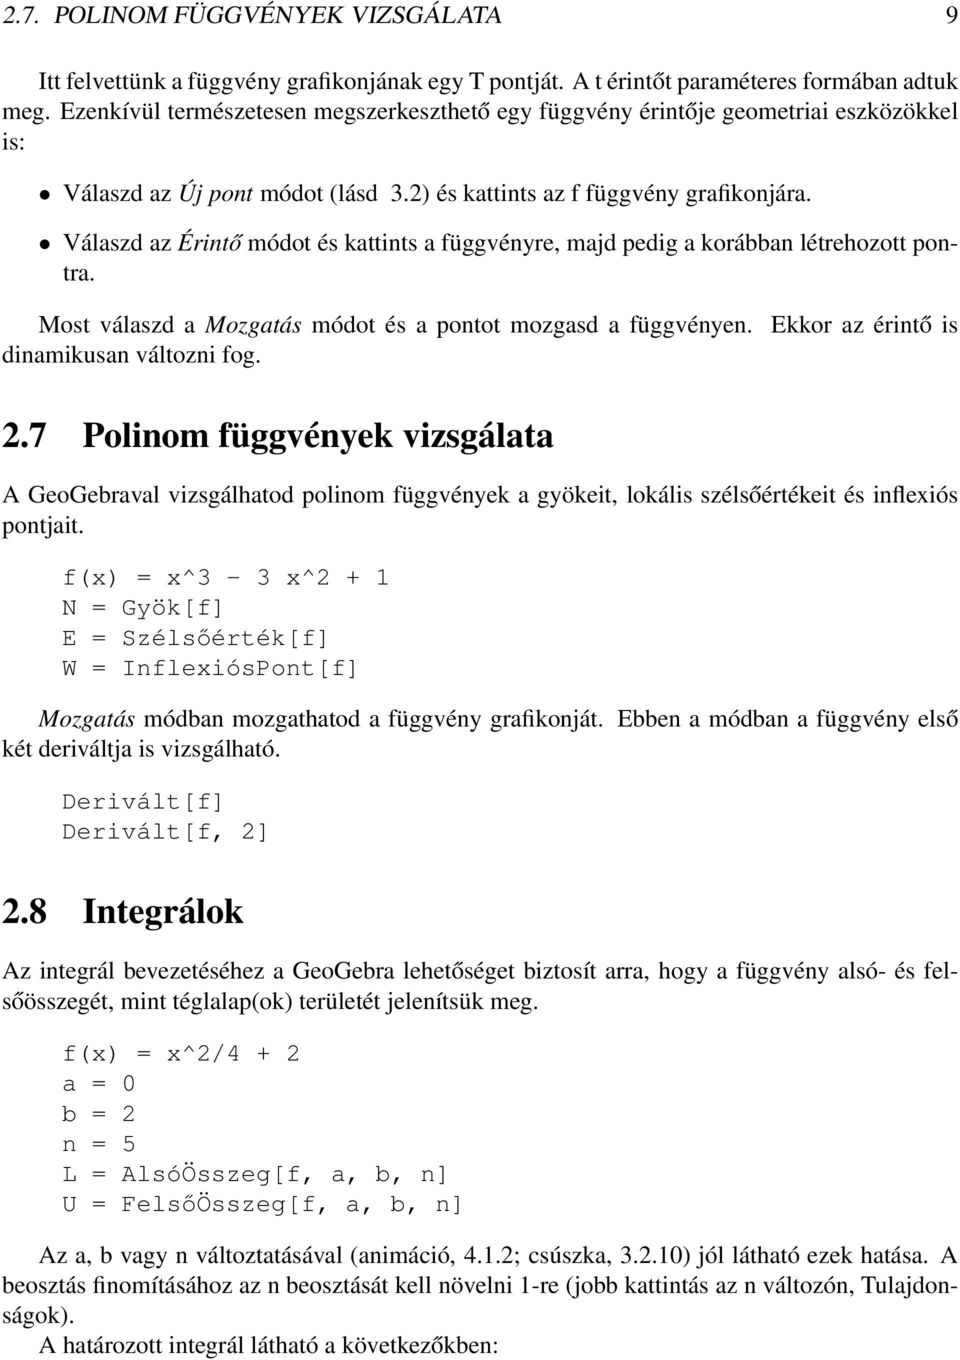 GeoGebra 2.5 kézikönyv. Fordította: Sulik Szabolcs - PDF Ingyenes letöltés